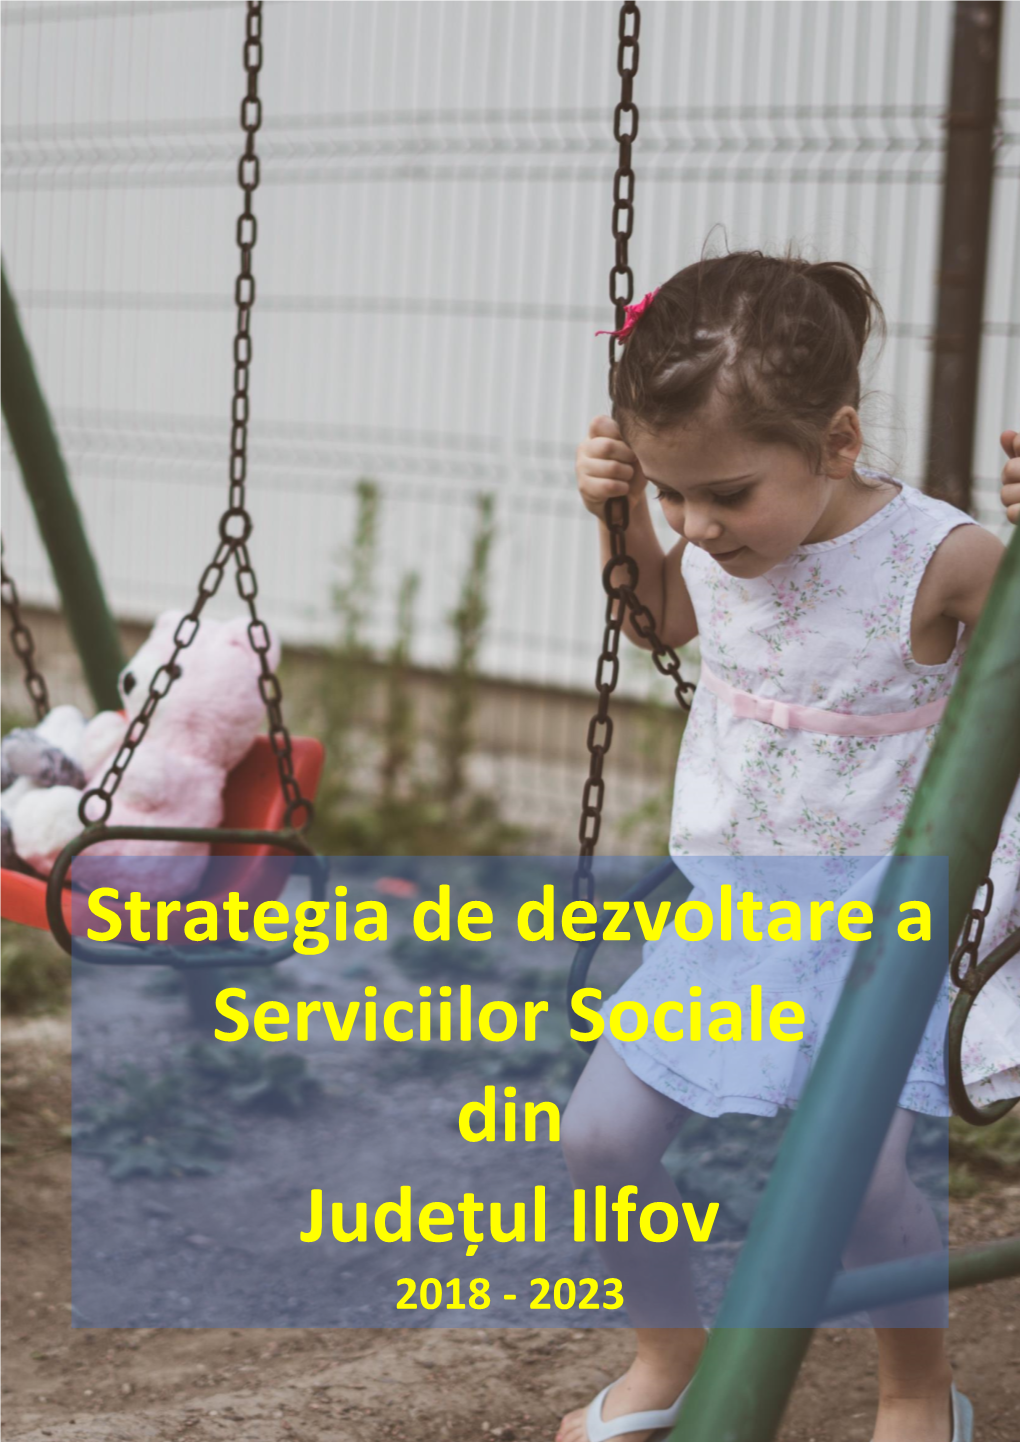 Strategia De Dezvoltare a Serviciilor Sociale Din Județul Ilfov 2018 - 2023 [Type Here]